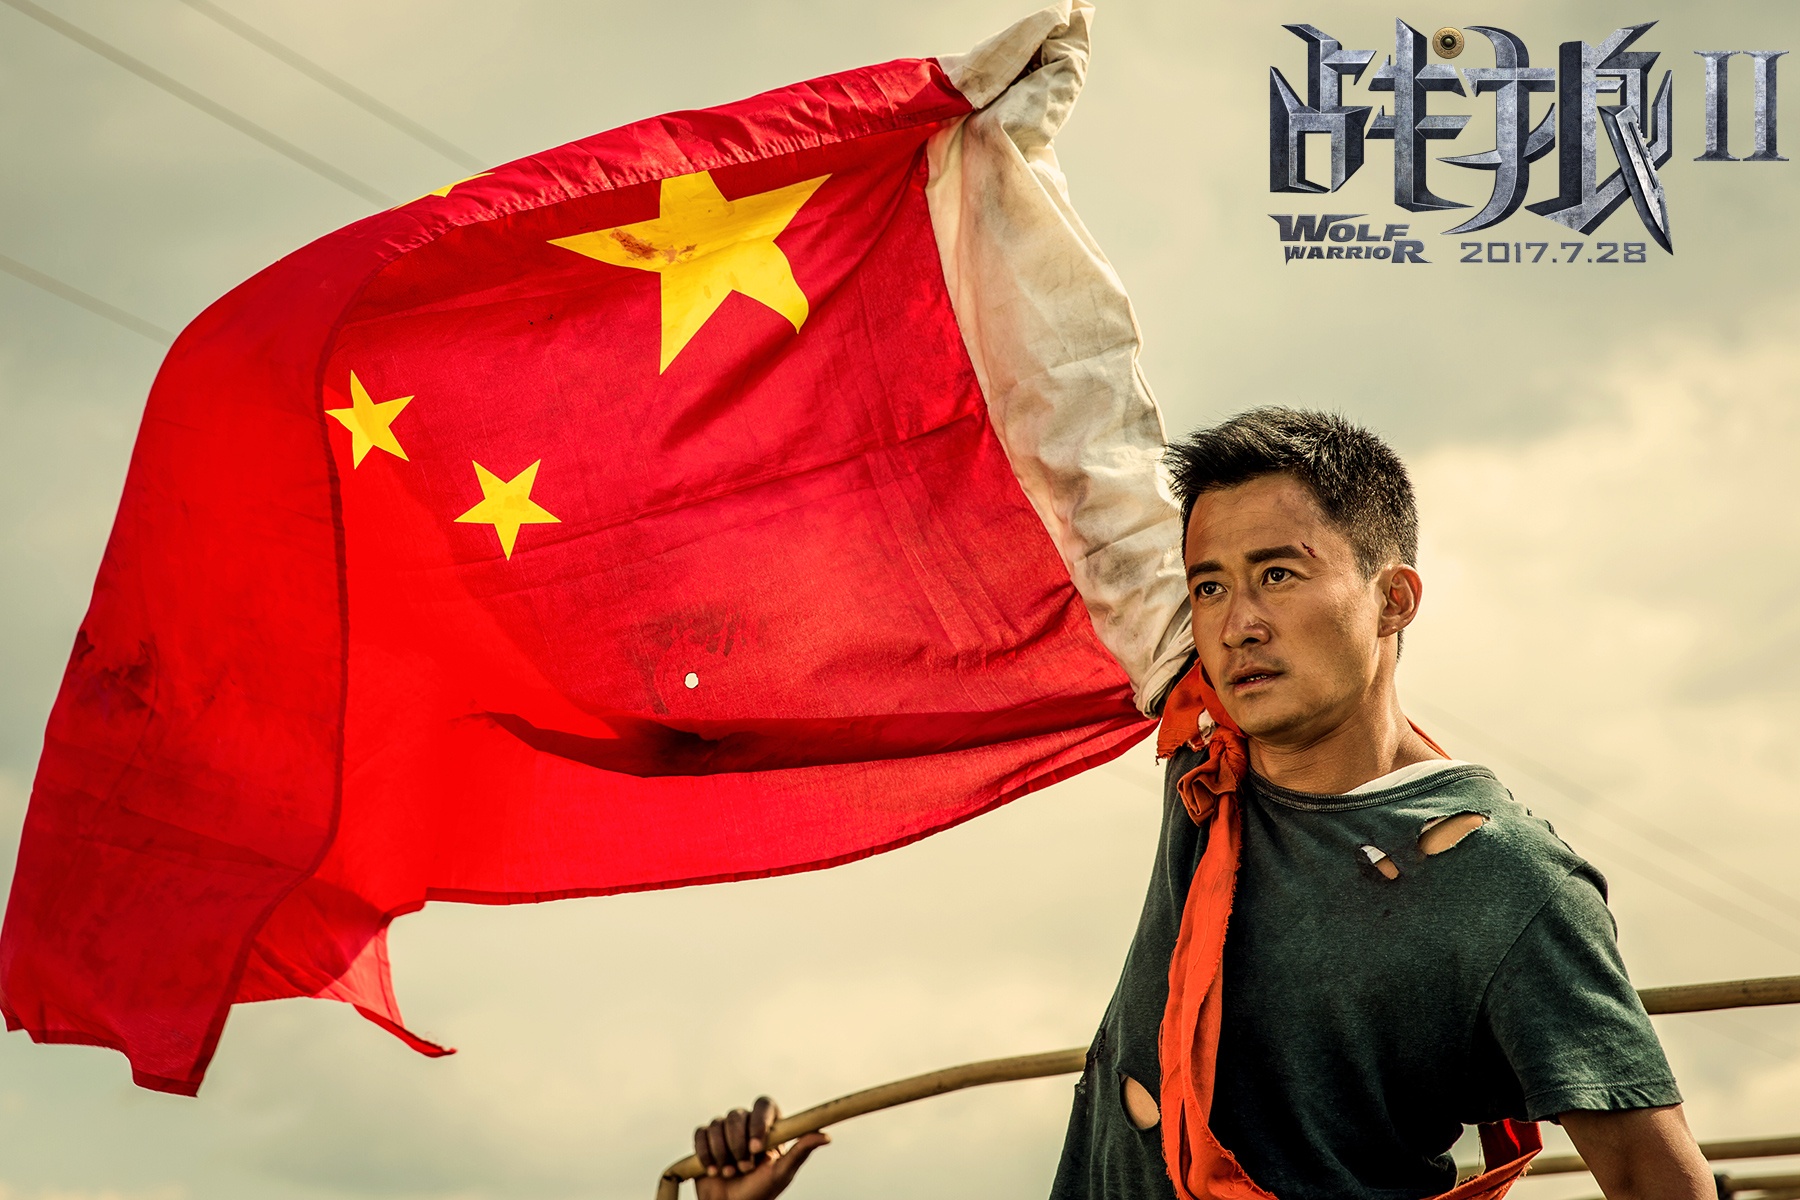 2017年中国电影总票房559.11亿元 同比增长13%